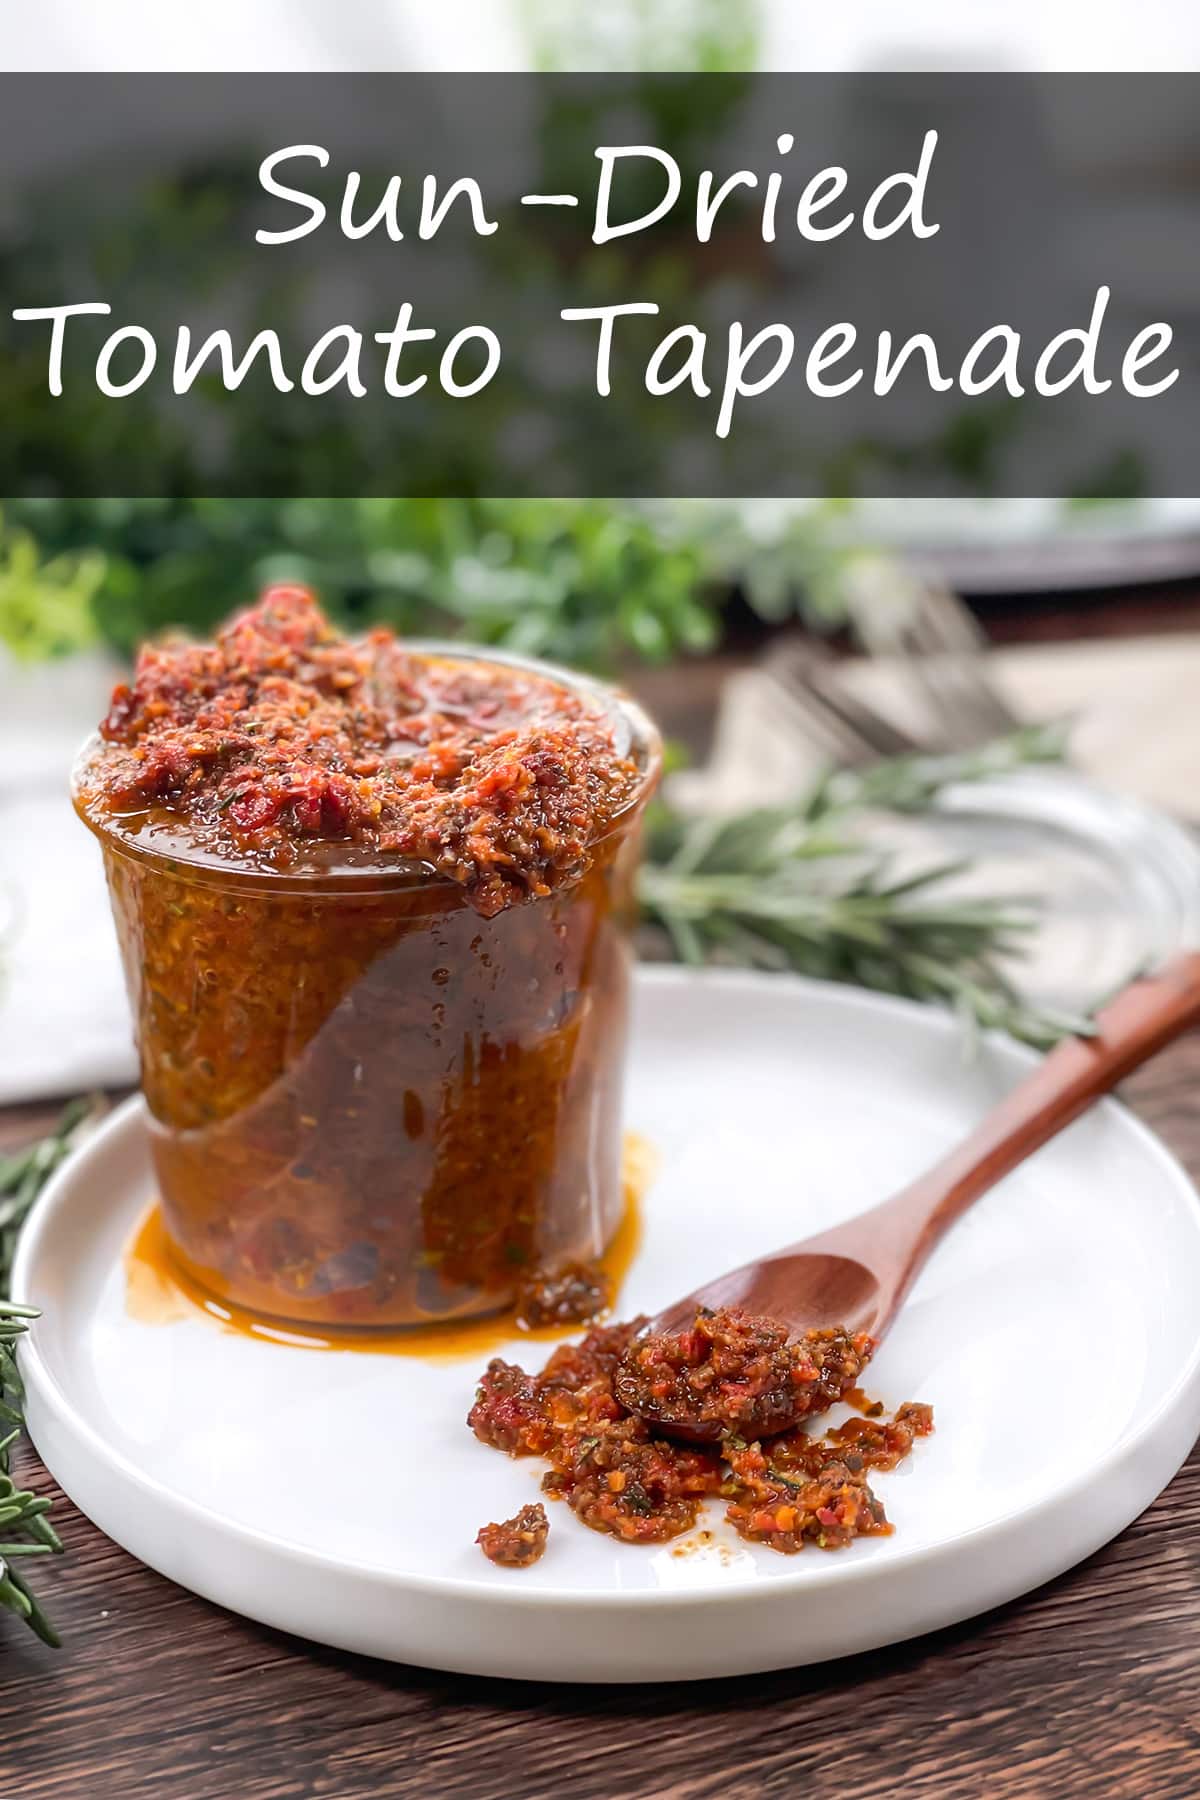 Sun-Dried Tomato Tapenade